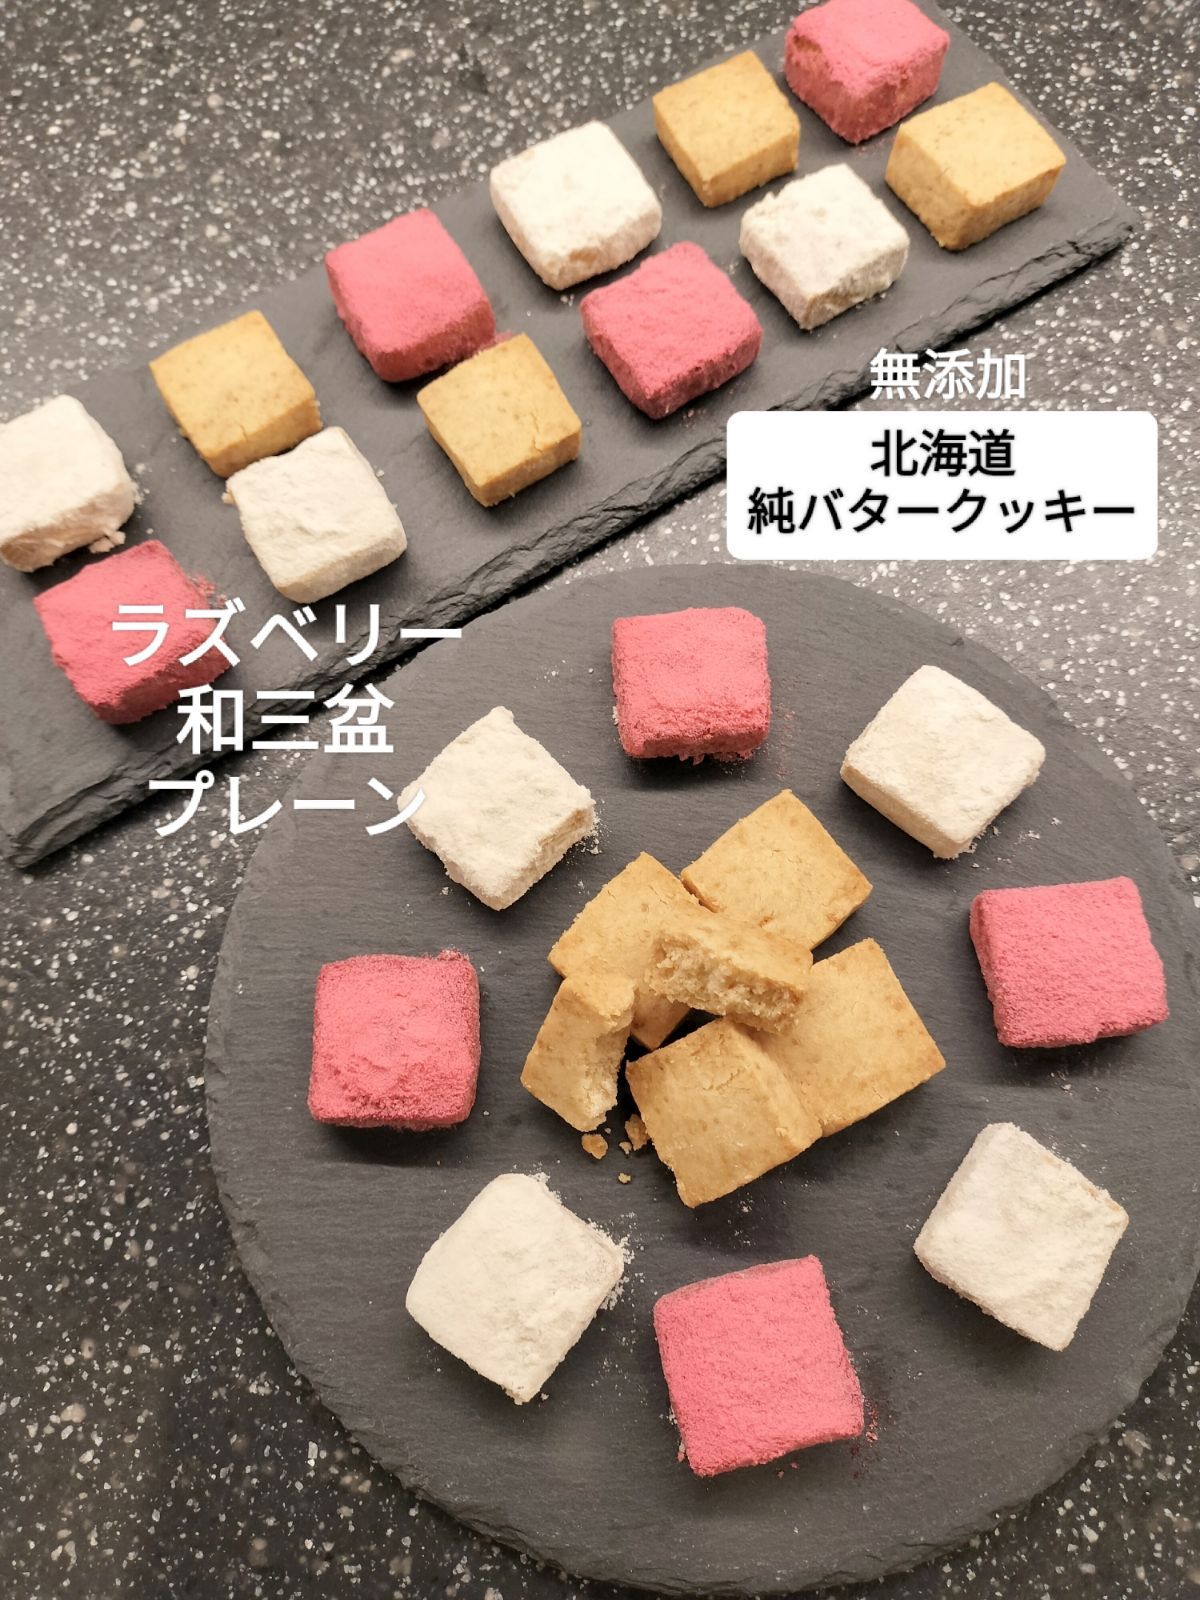 10月24日発送分】北海道純バタークッキー18枚 無添加 ラズベリー